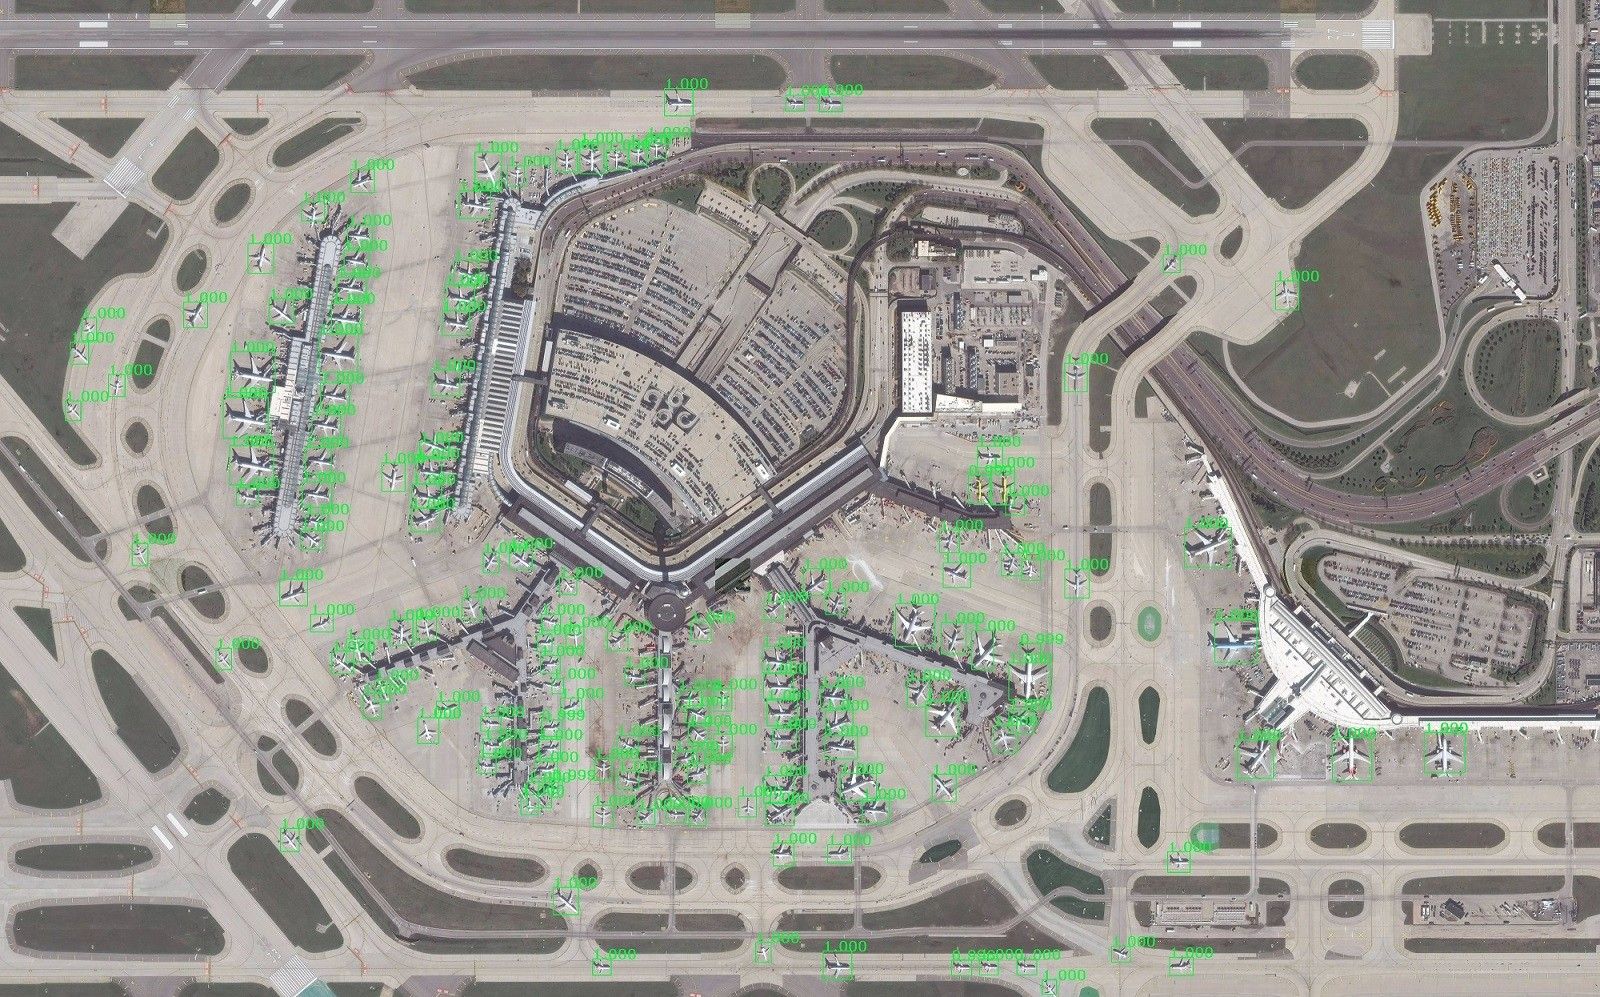 Prezentacja działania systemu GATR - wykryte (zielone obramowanie) samoloty na lotnisku O'Hare w Chicago. Fot. Lockheed Martin [lockheedmartin.com]